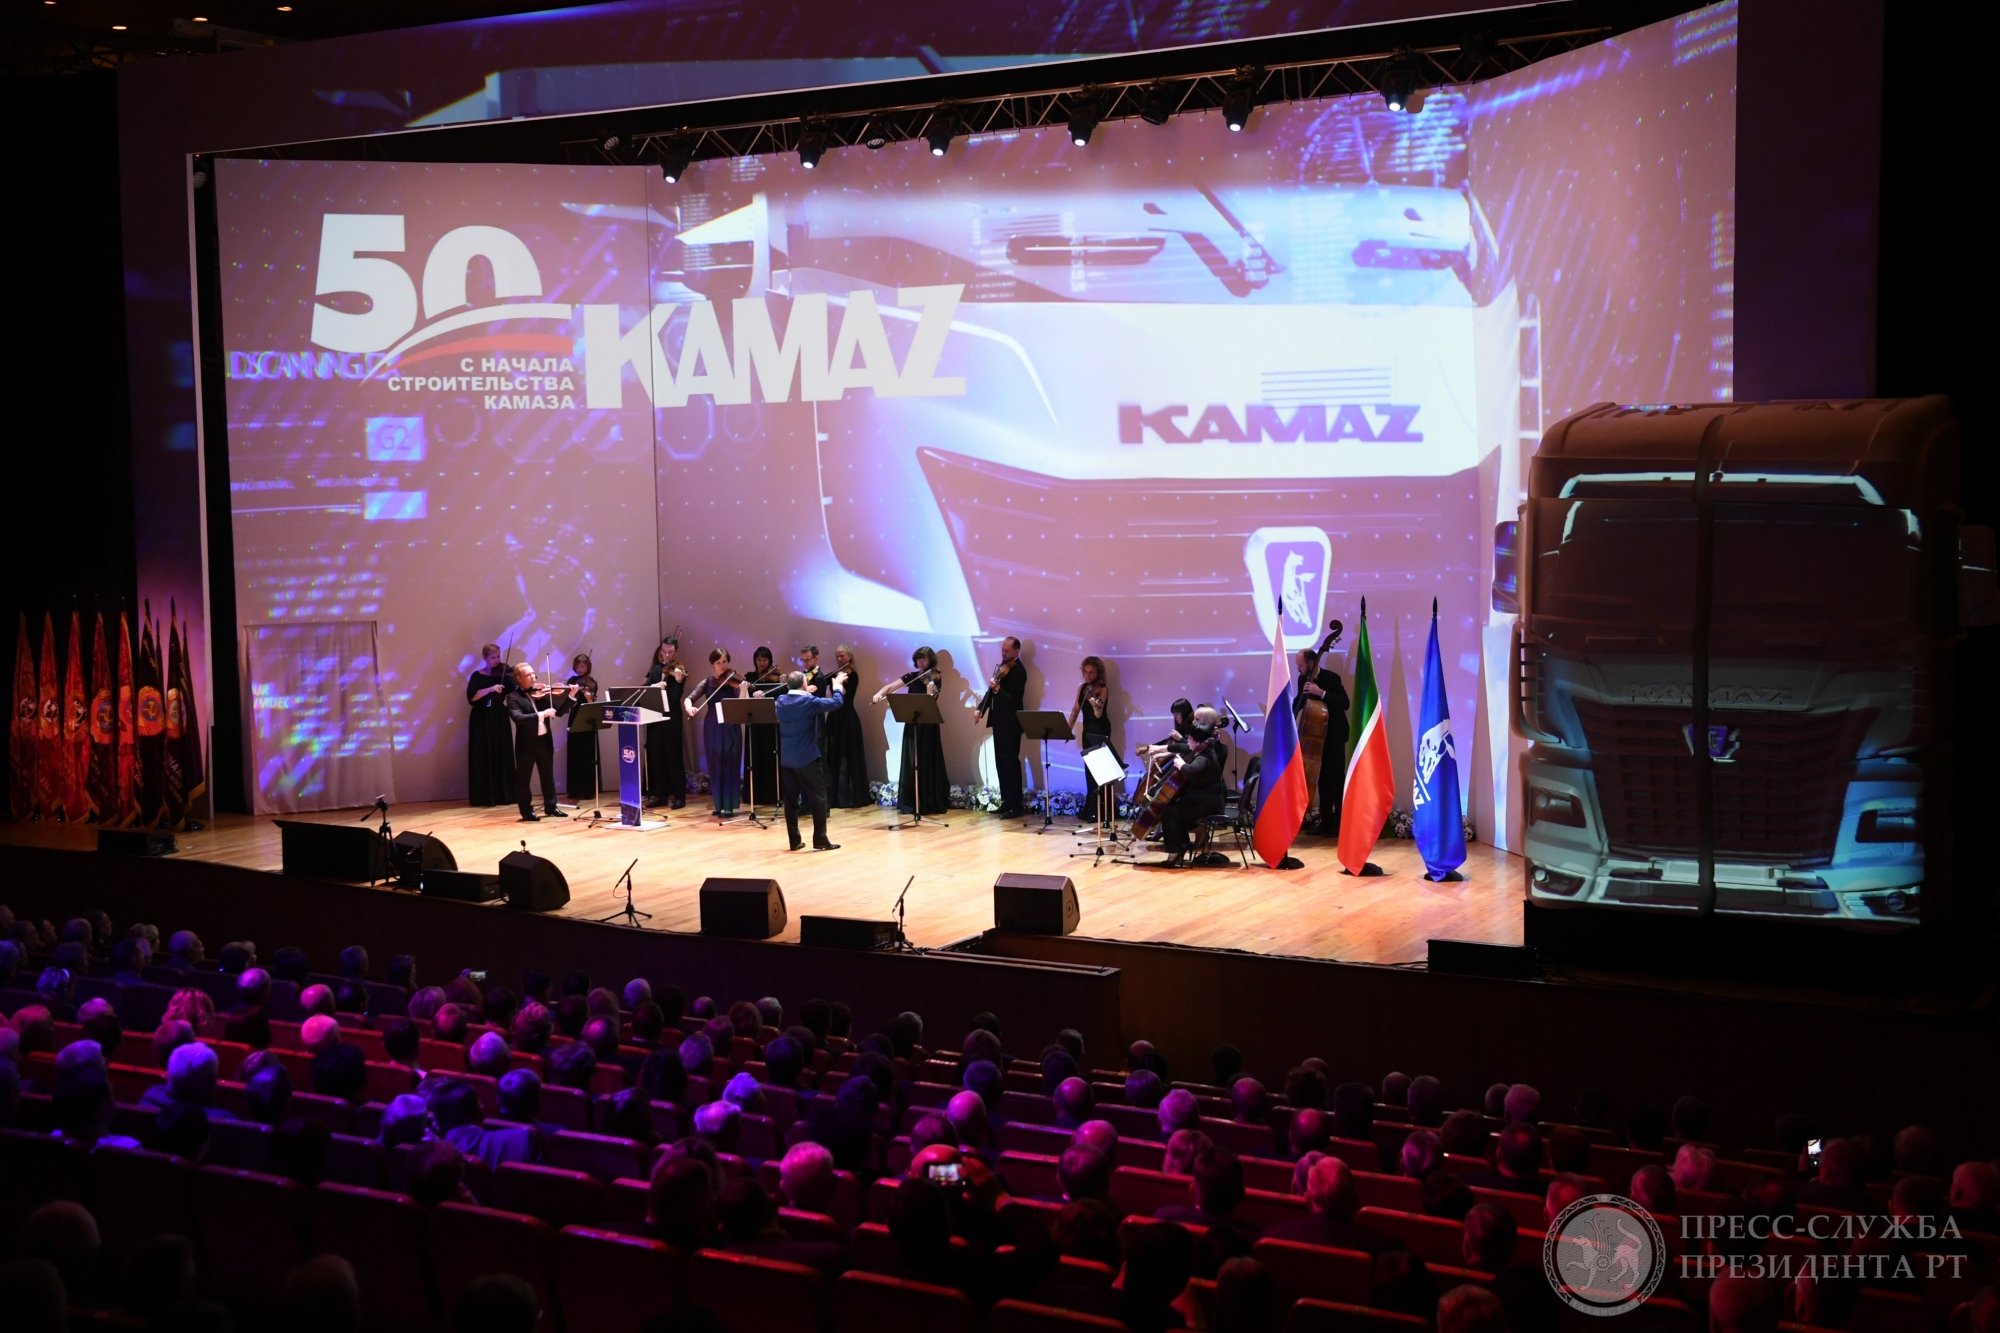 Рустам Минниханов поздравил камазовцев с юбилеем и вручил награды (фото)